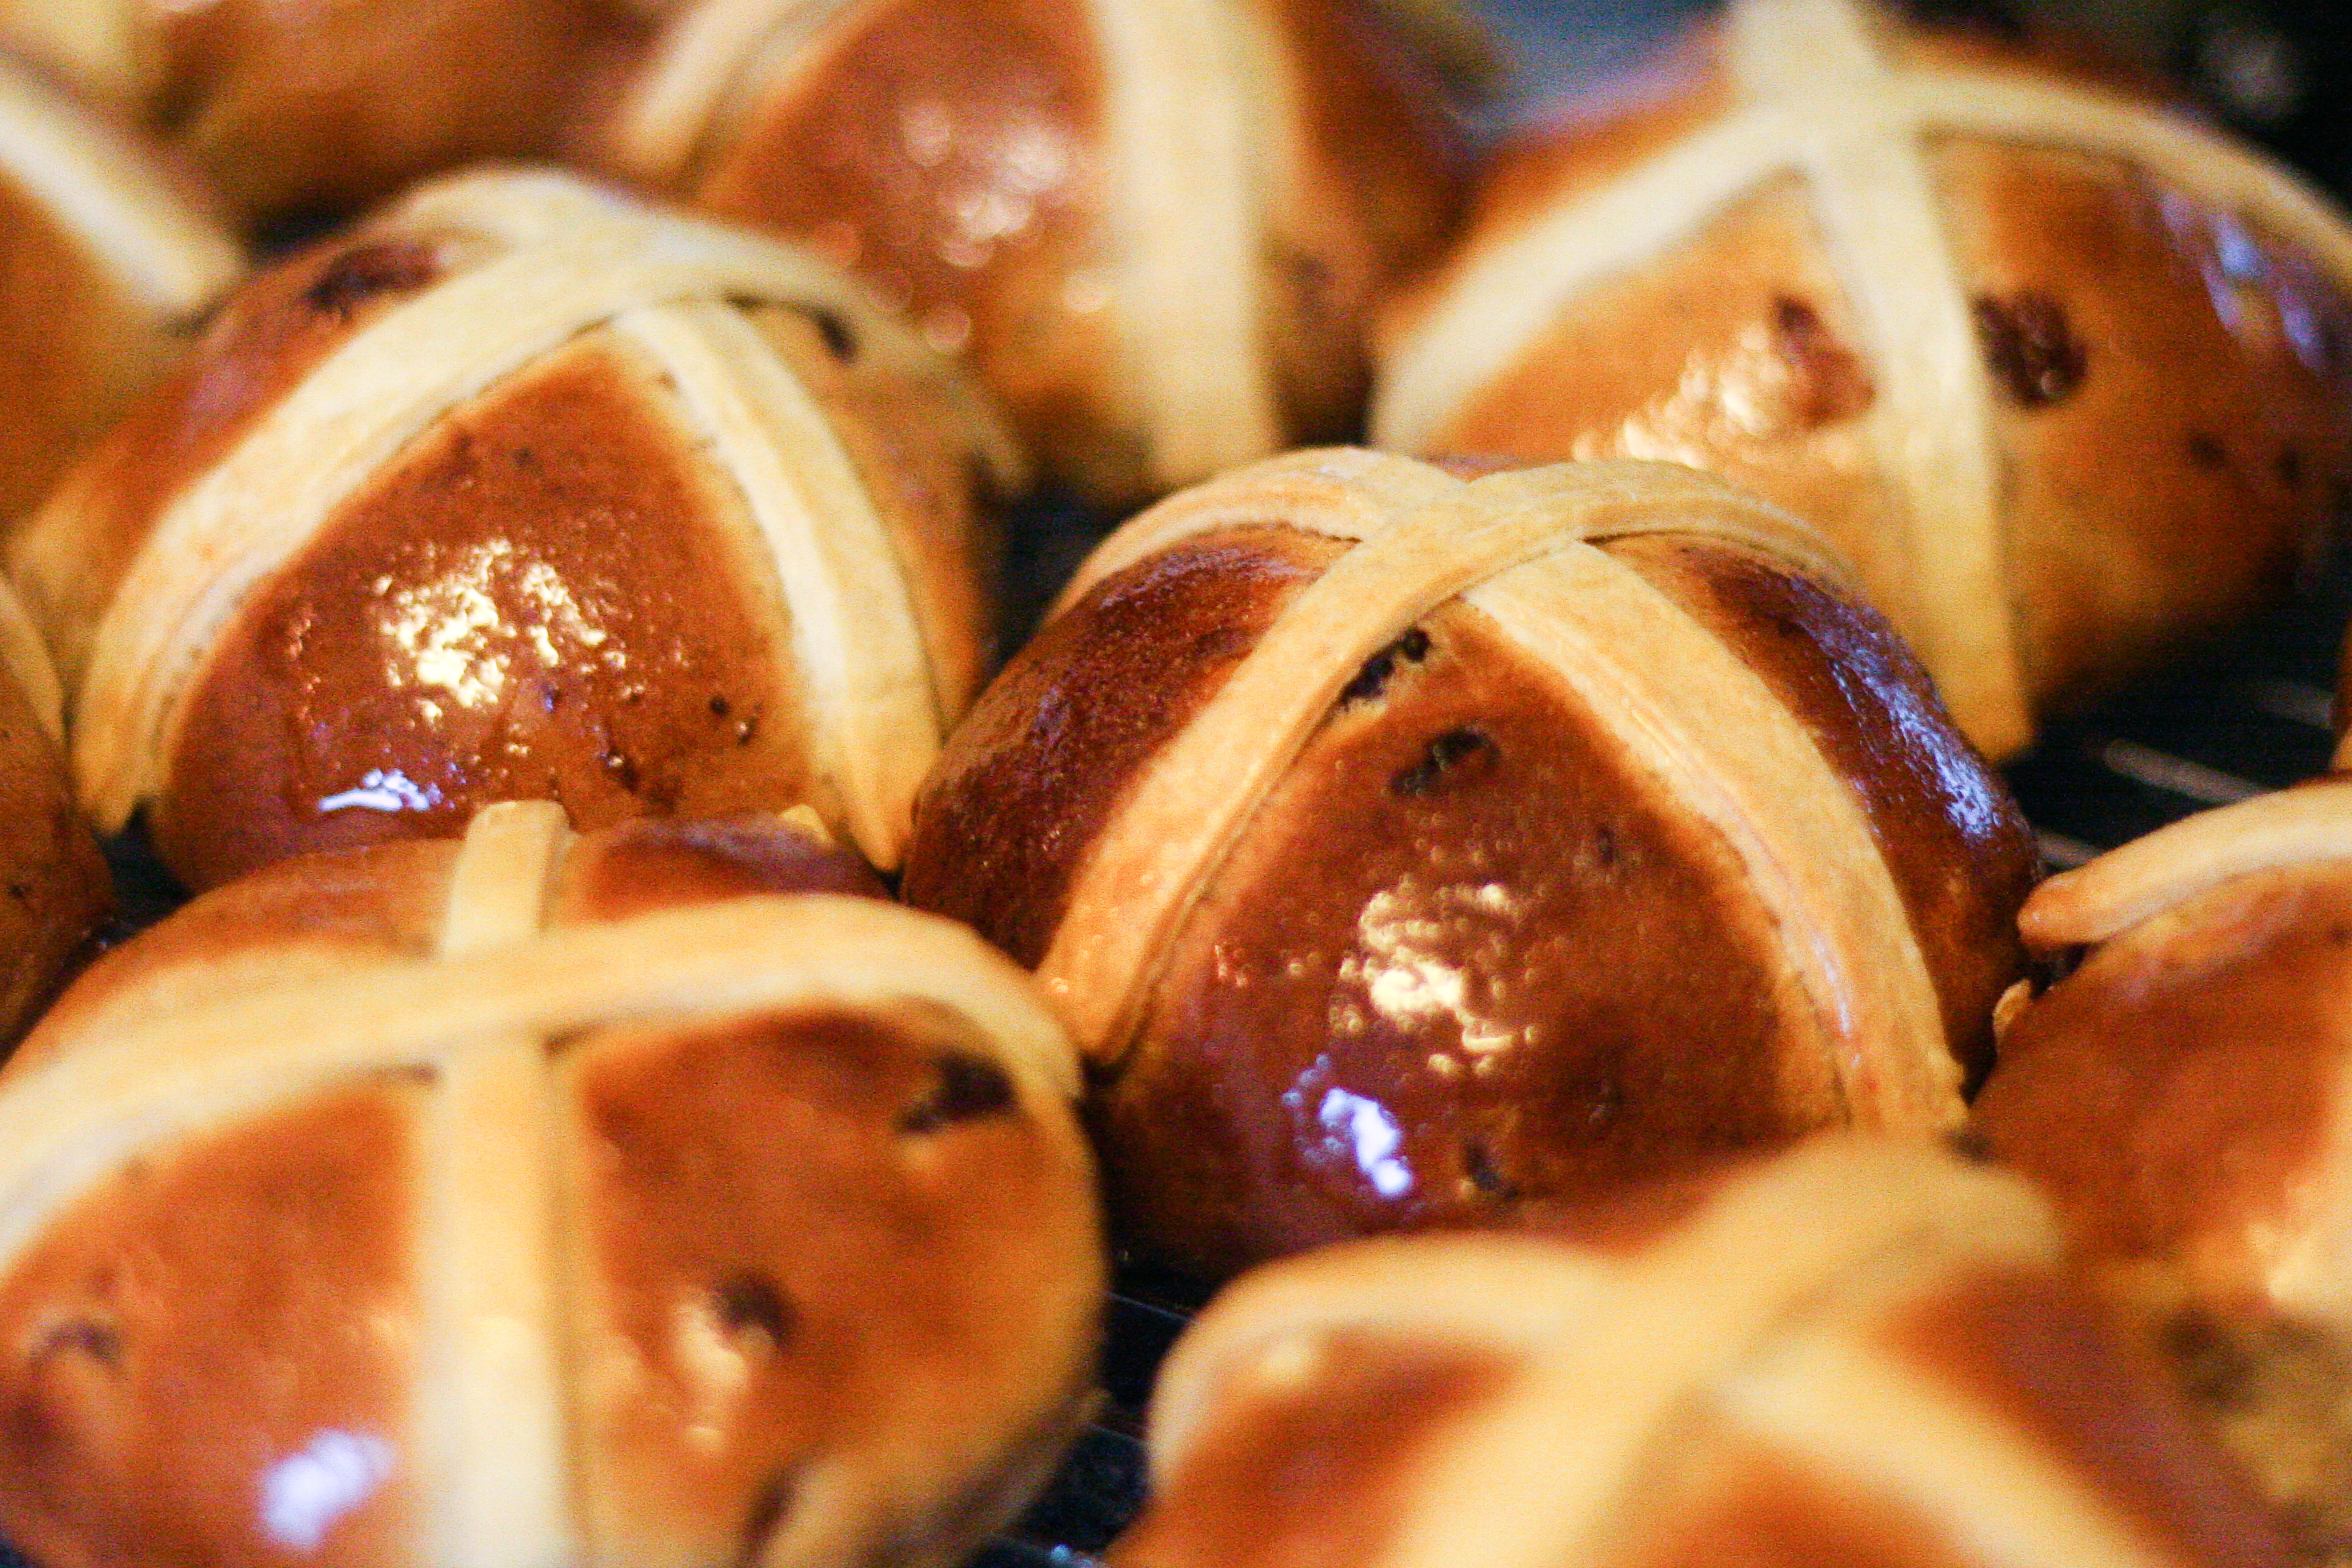 Булочки попы. Крестовые булочки hot Cross buns. Hot Cross buns в Великобритании. Крестовые булочки в Англии. Крестовые булочки к Пасхе.